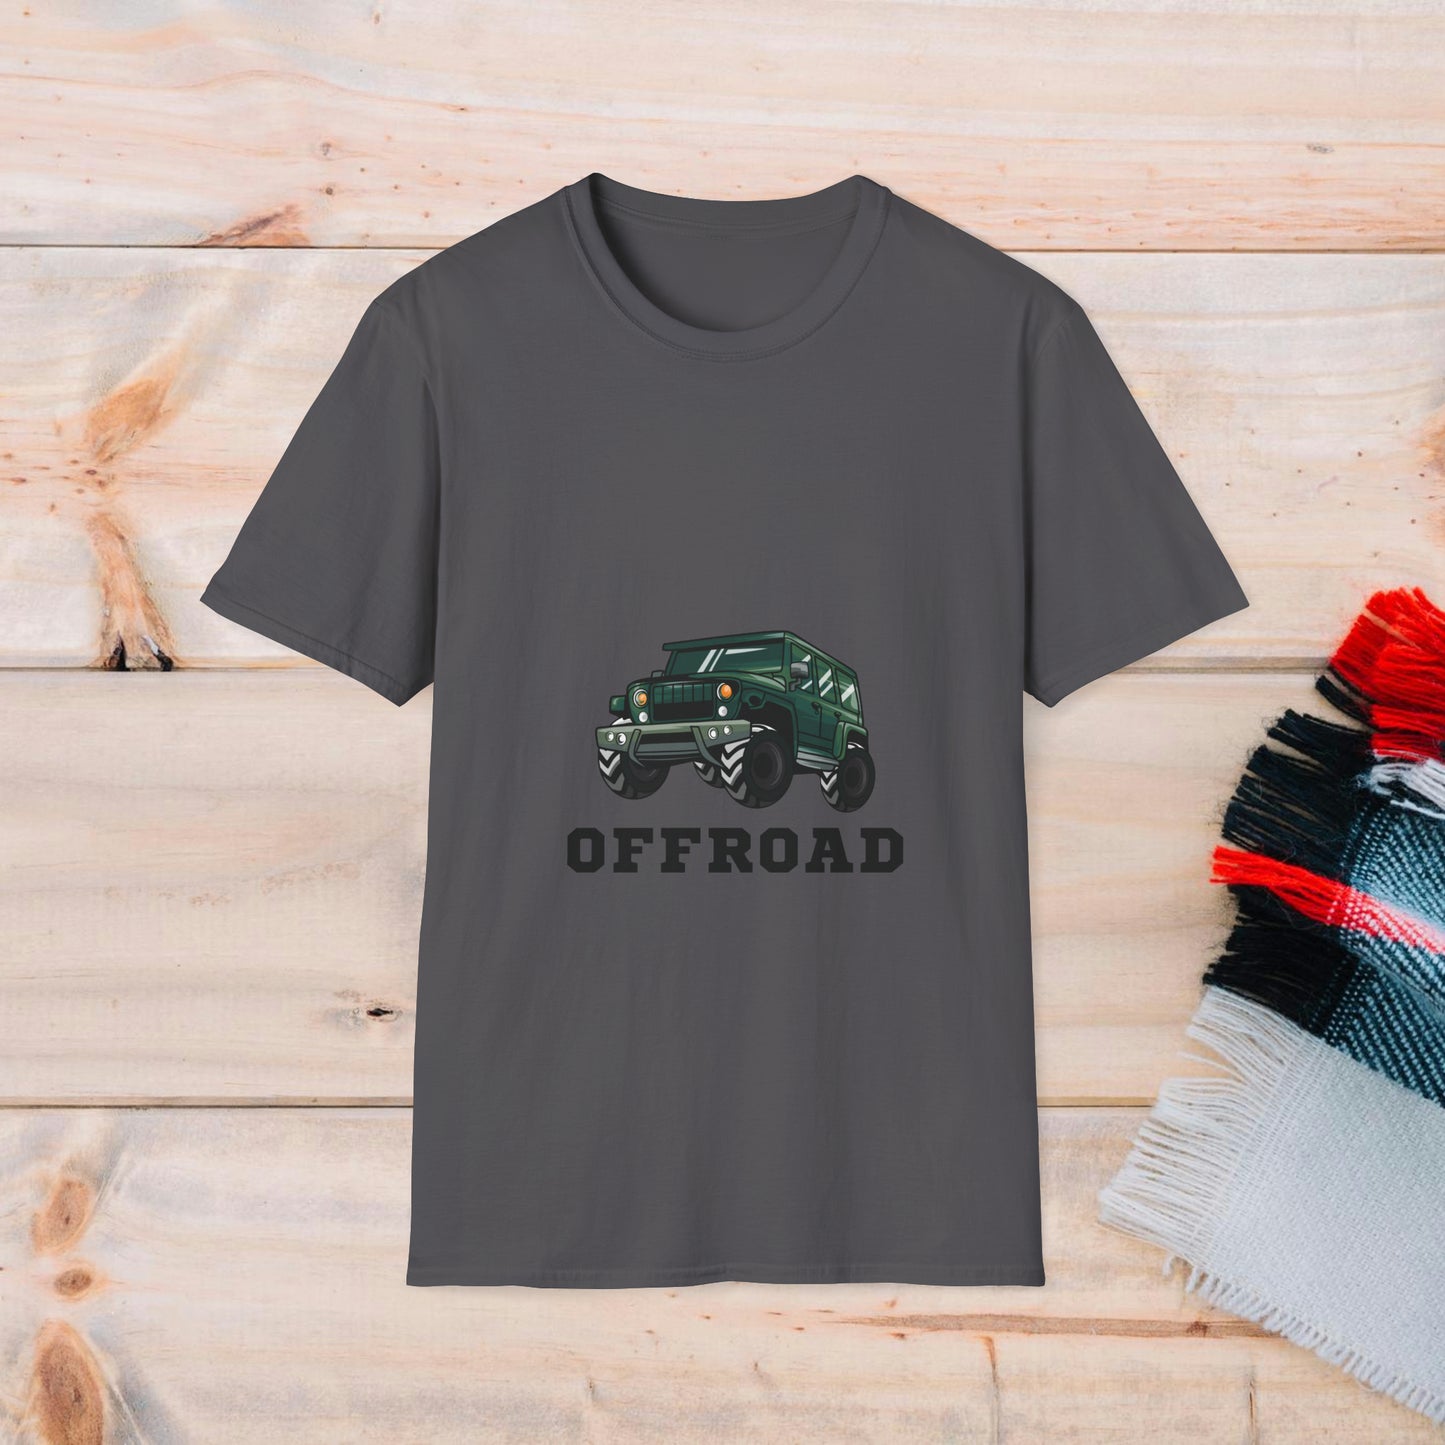 Off Road T-shirt